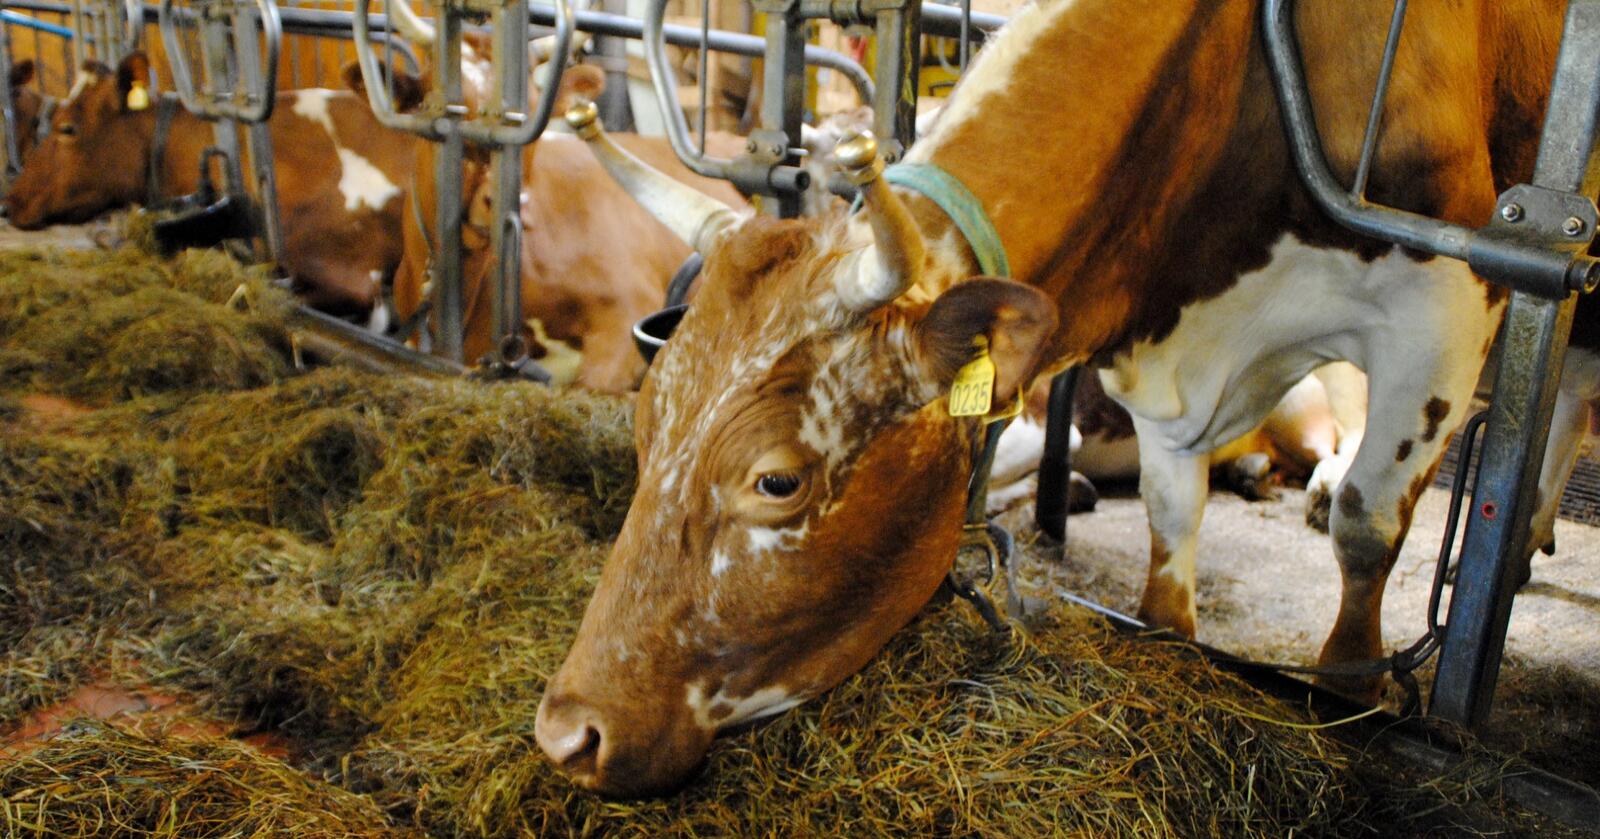 Et stort antall melkeprodusenter har fremdeles kyrne sine på bås, og det begynner å haste for ombygging til løsdriftsfjøs. Foto: Lars Bilit Hagen